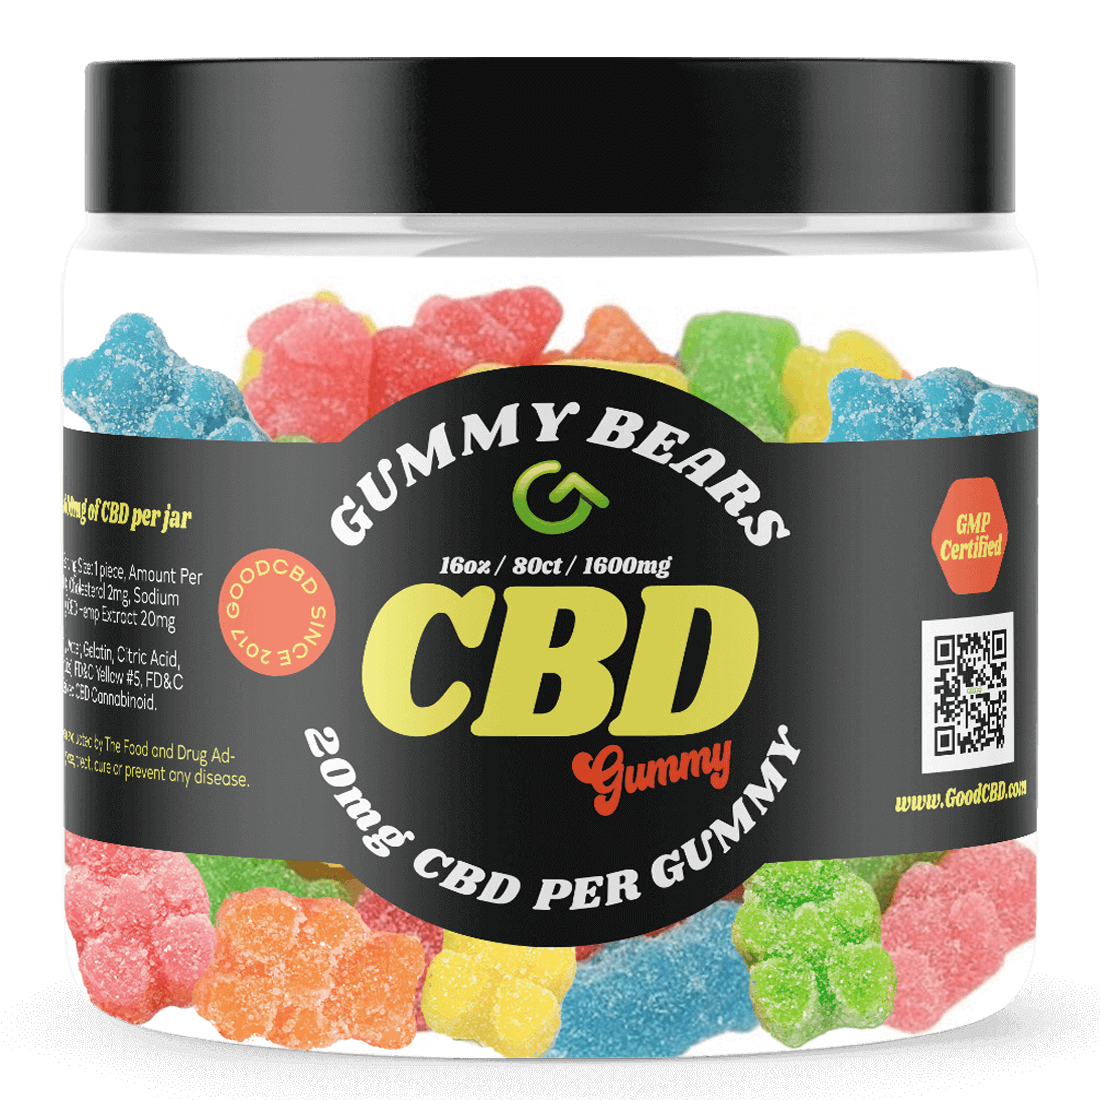 20mg CBD gummy bears - Good CBD 